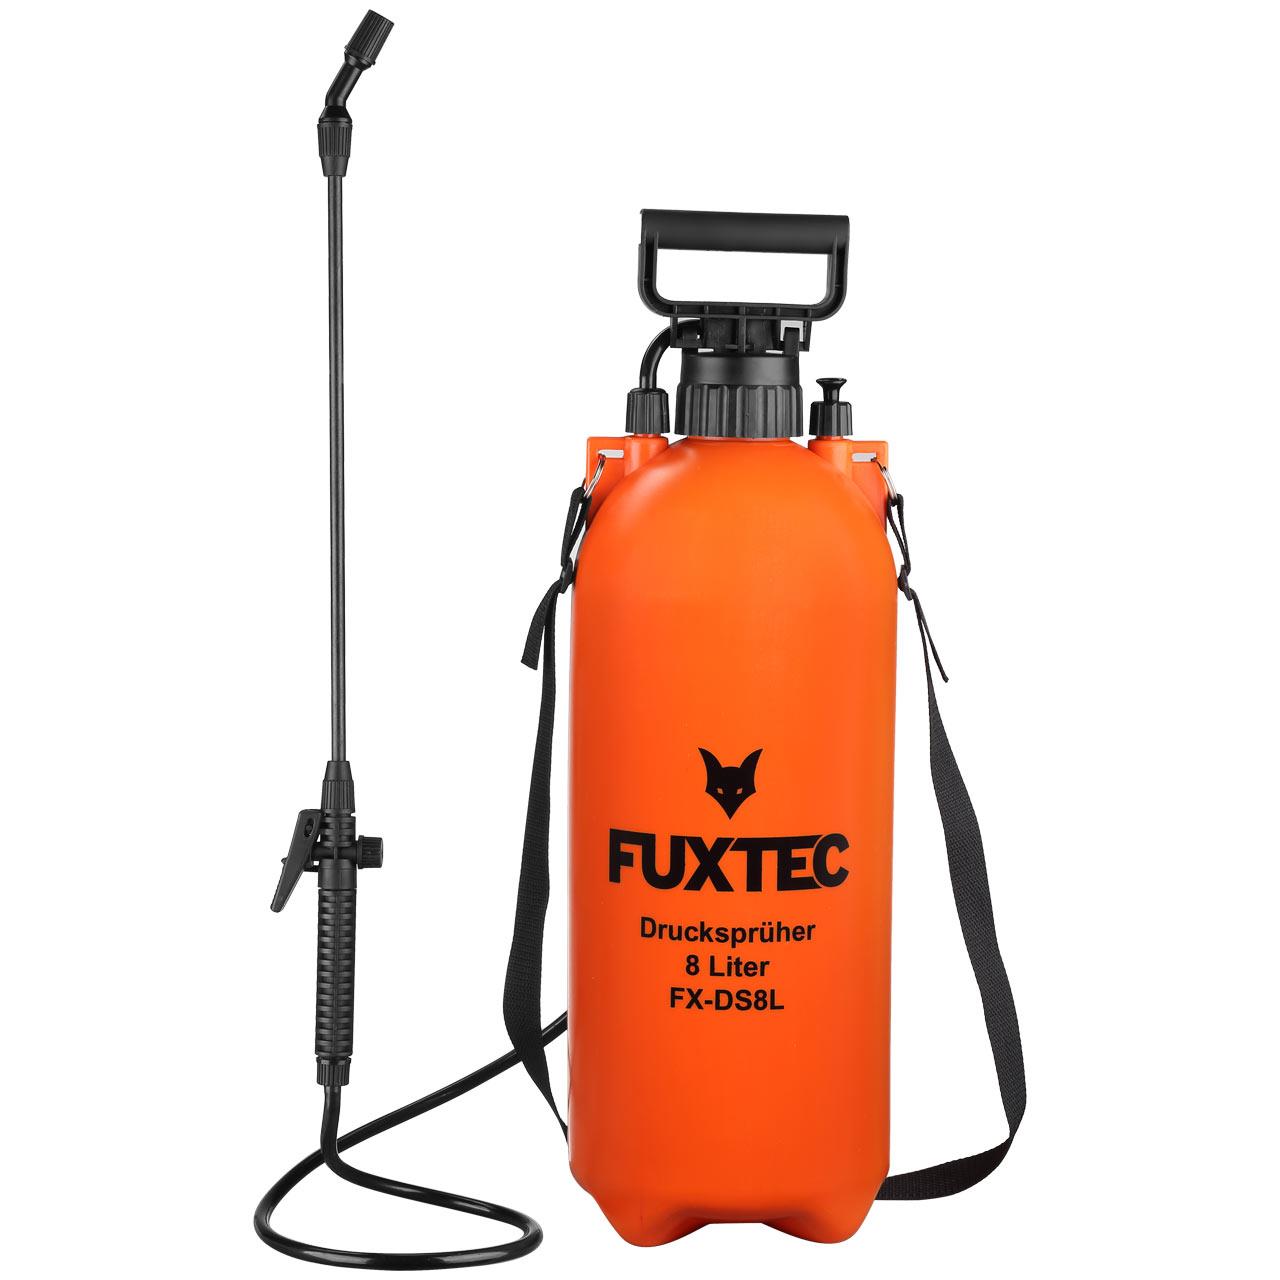 FUXTEC pressure sprayer 8 litres FX-DS8L